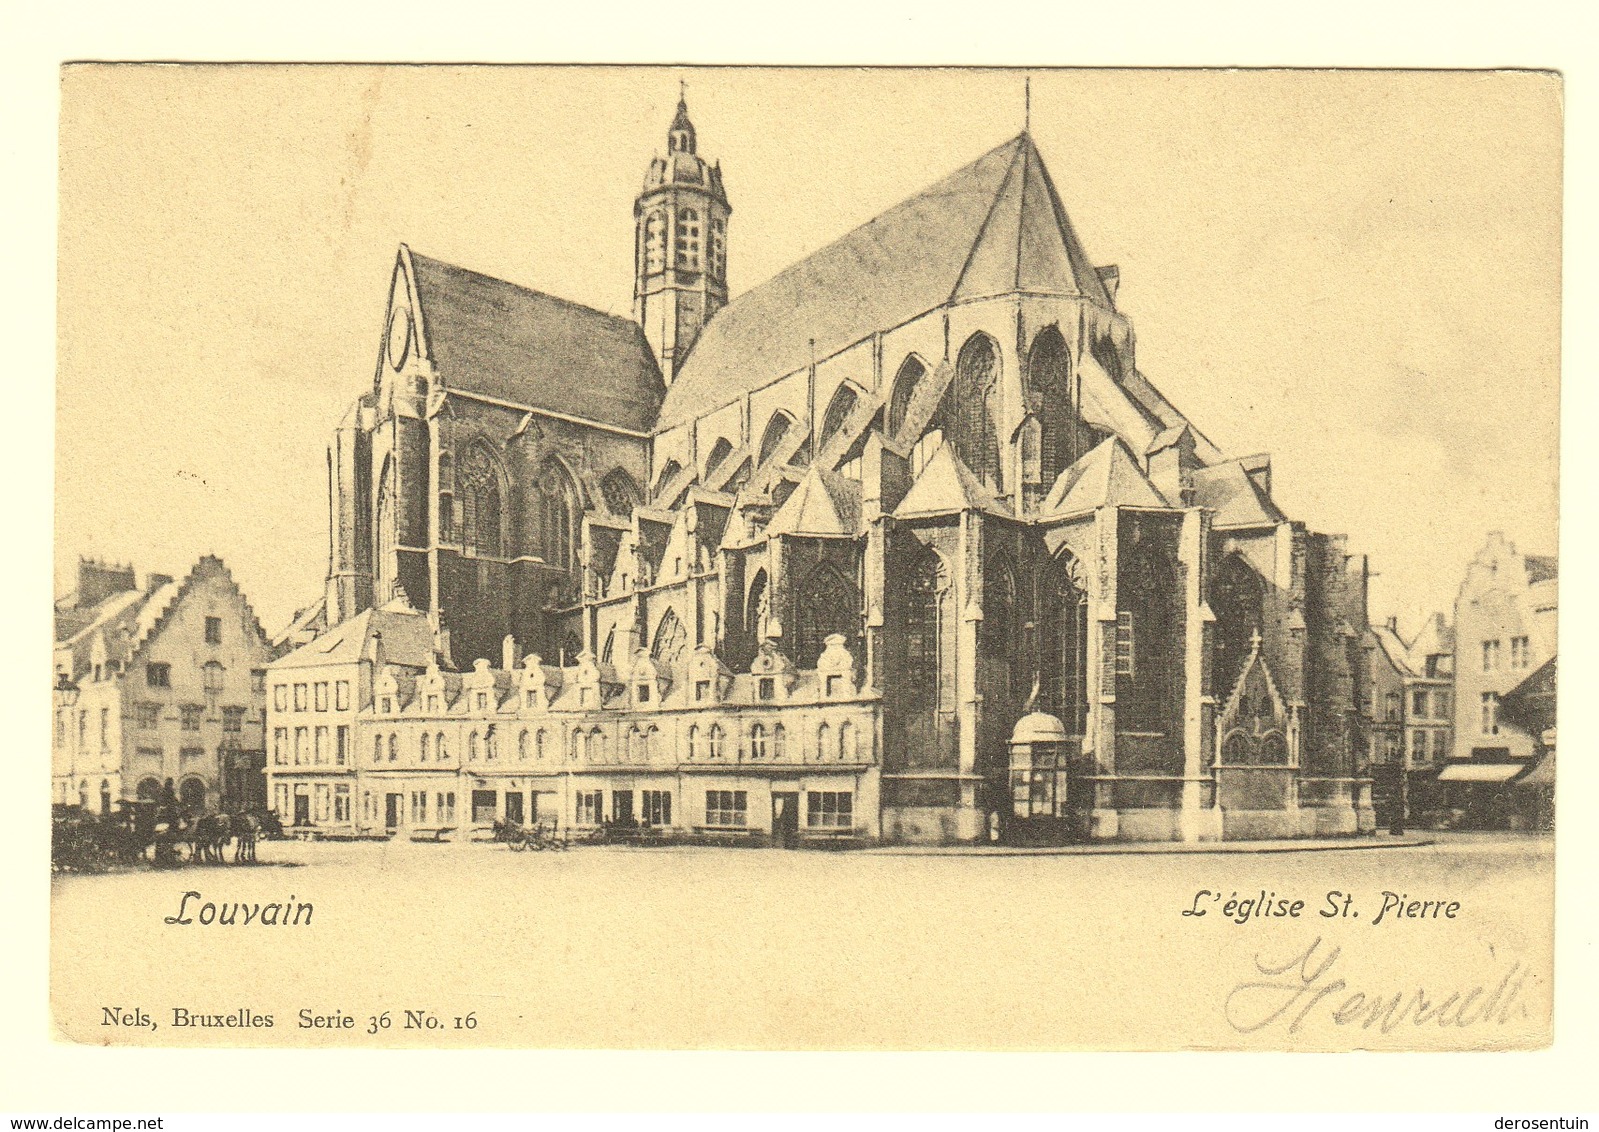 #21564 [Postkaarten] Lot van 34 postkaarten Leuven